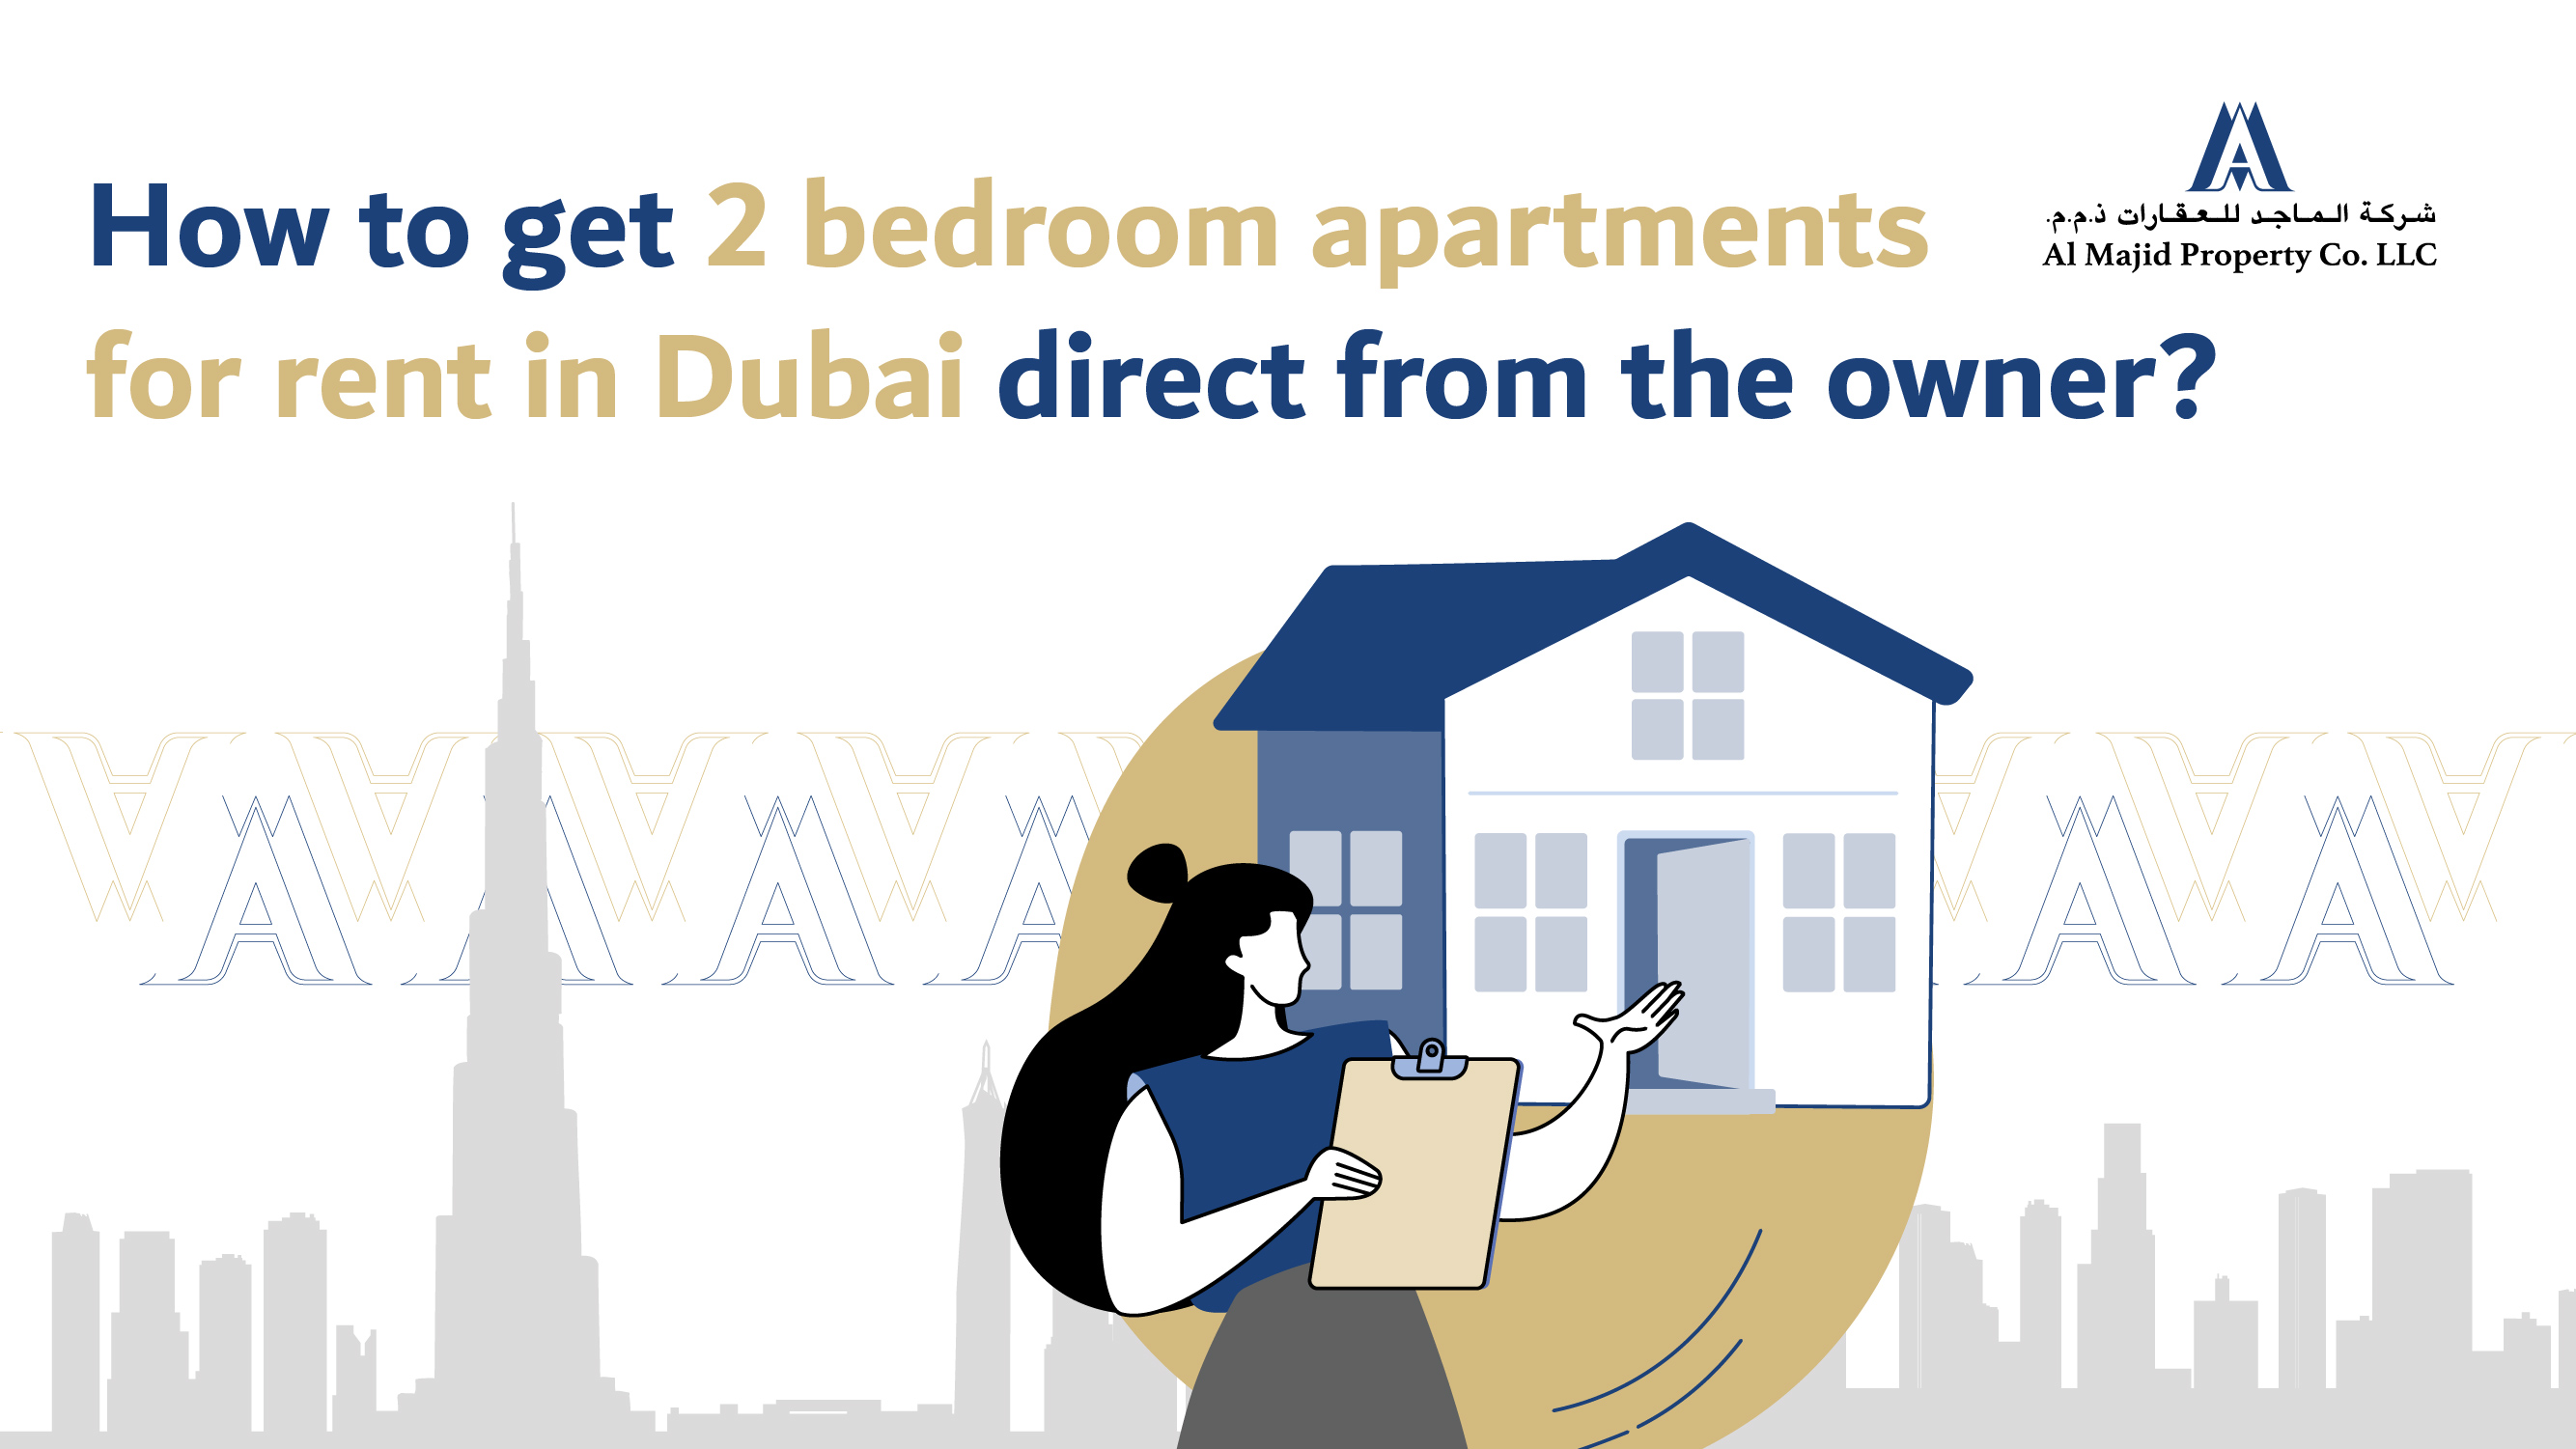 كيف تحصل على شقة بغرفتي نوم للإيجار في دبي من المالك مباشرة